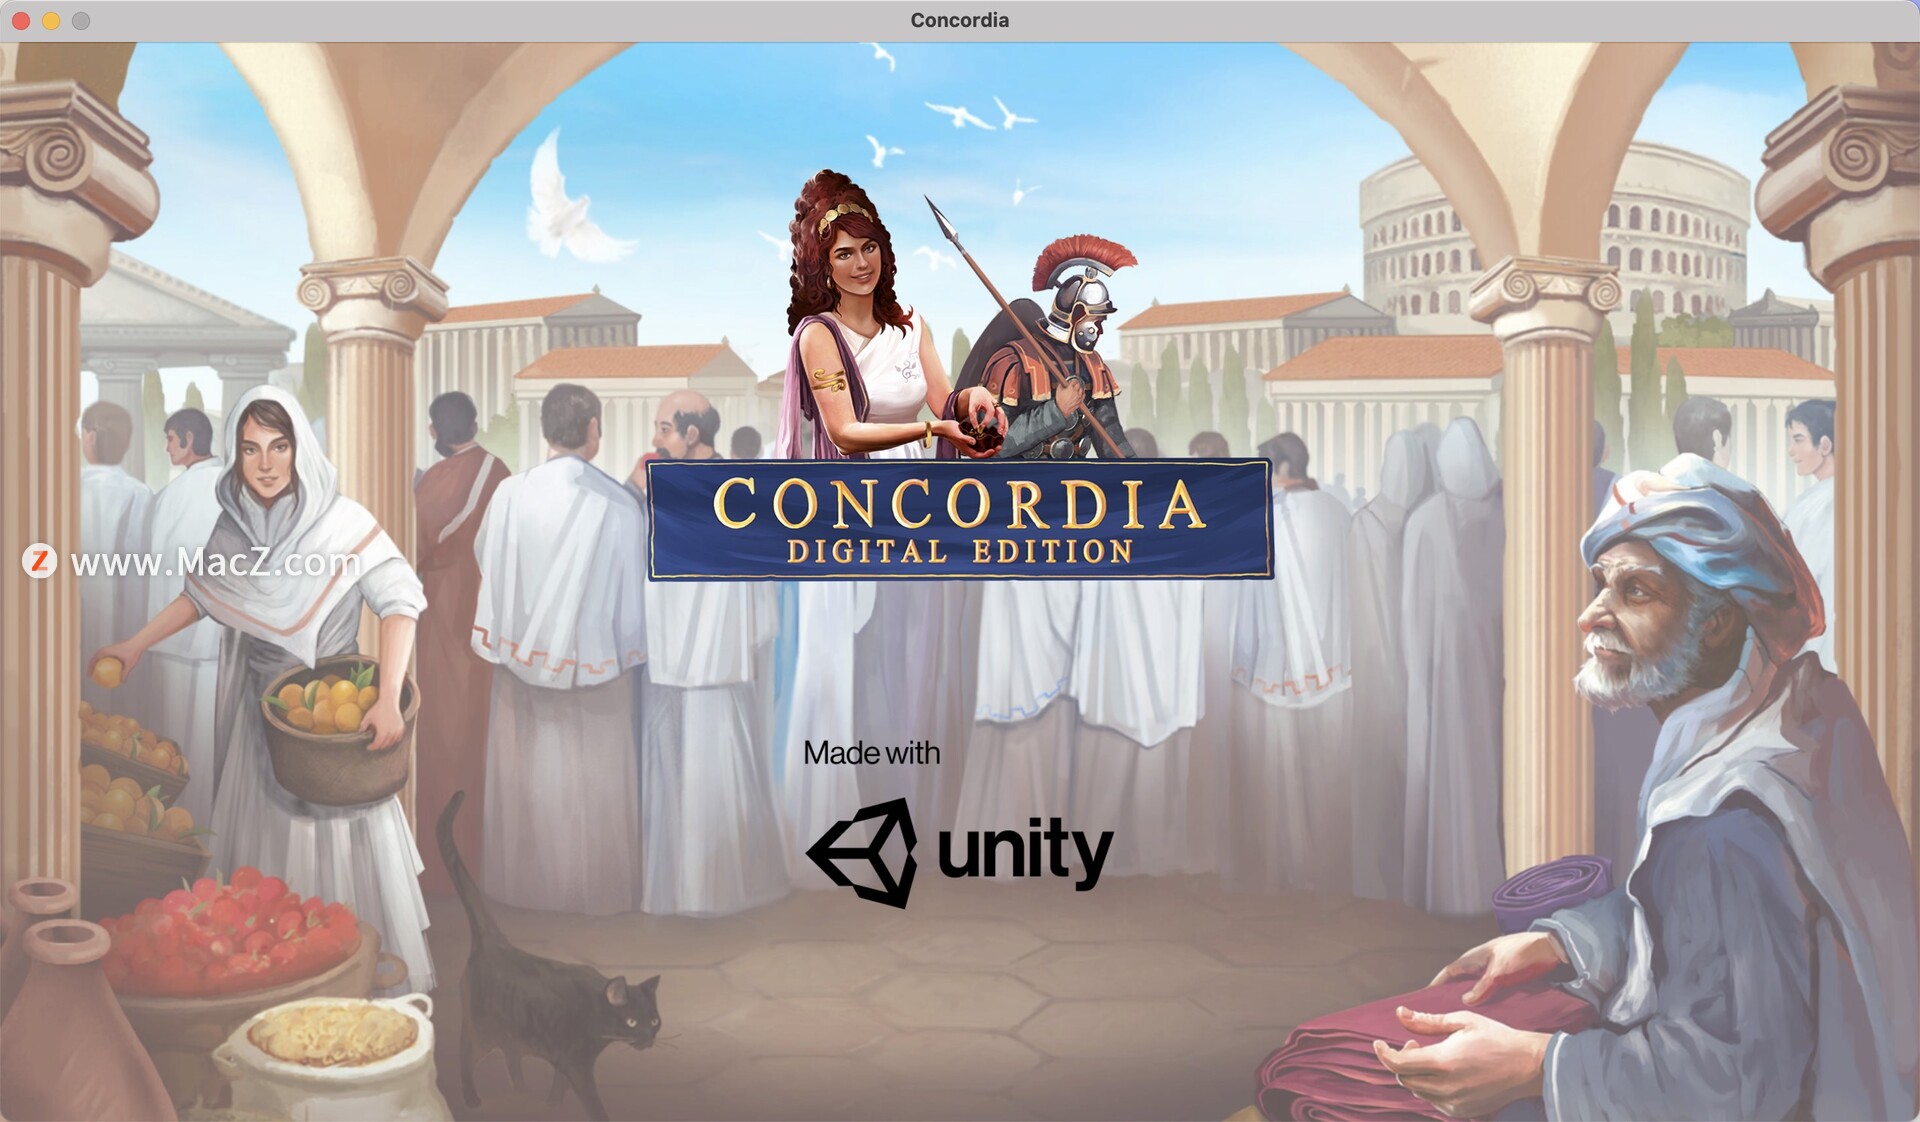 康考迪亚:数字版 Concordia for mac(策略棋盘游戏)附dlc